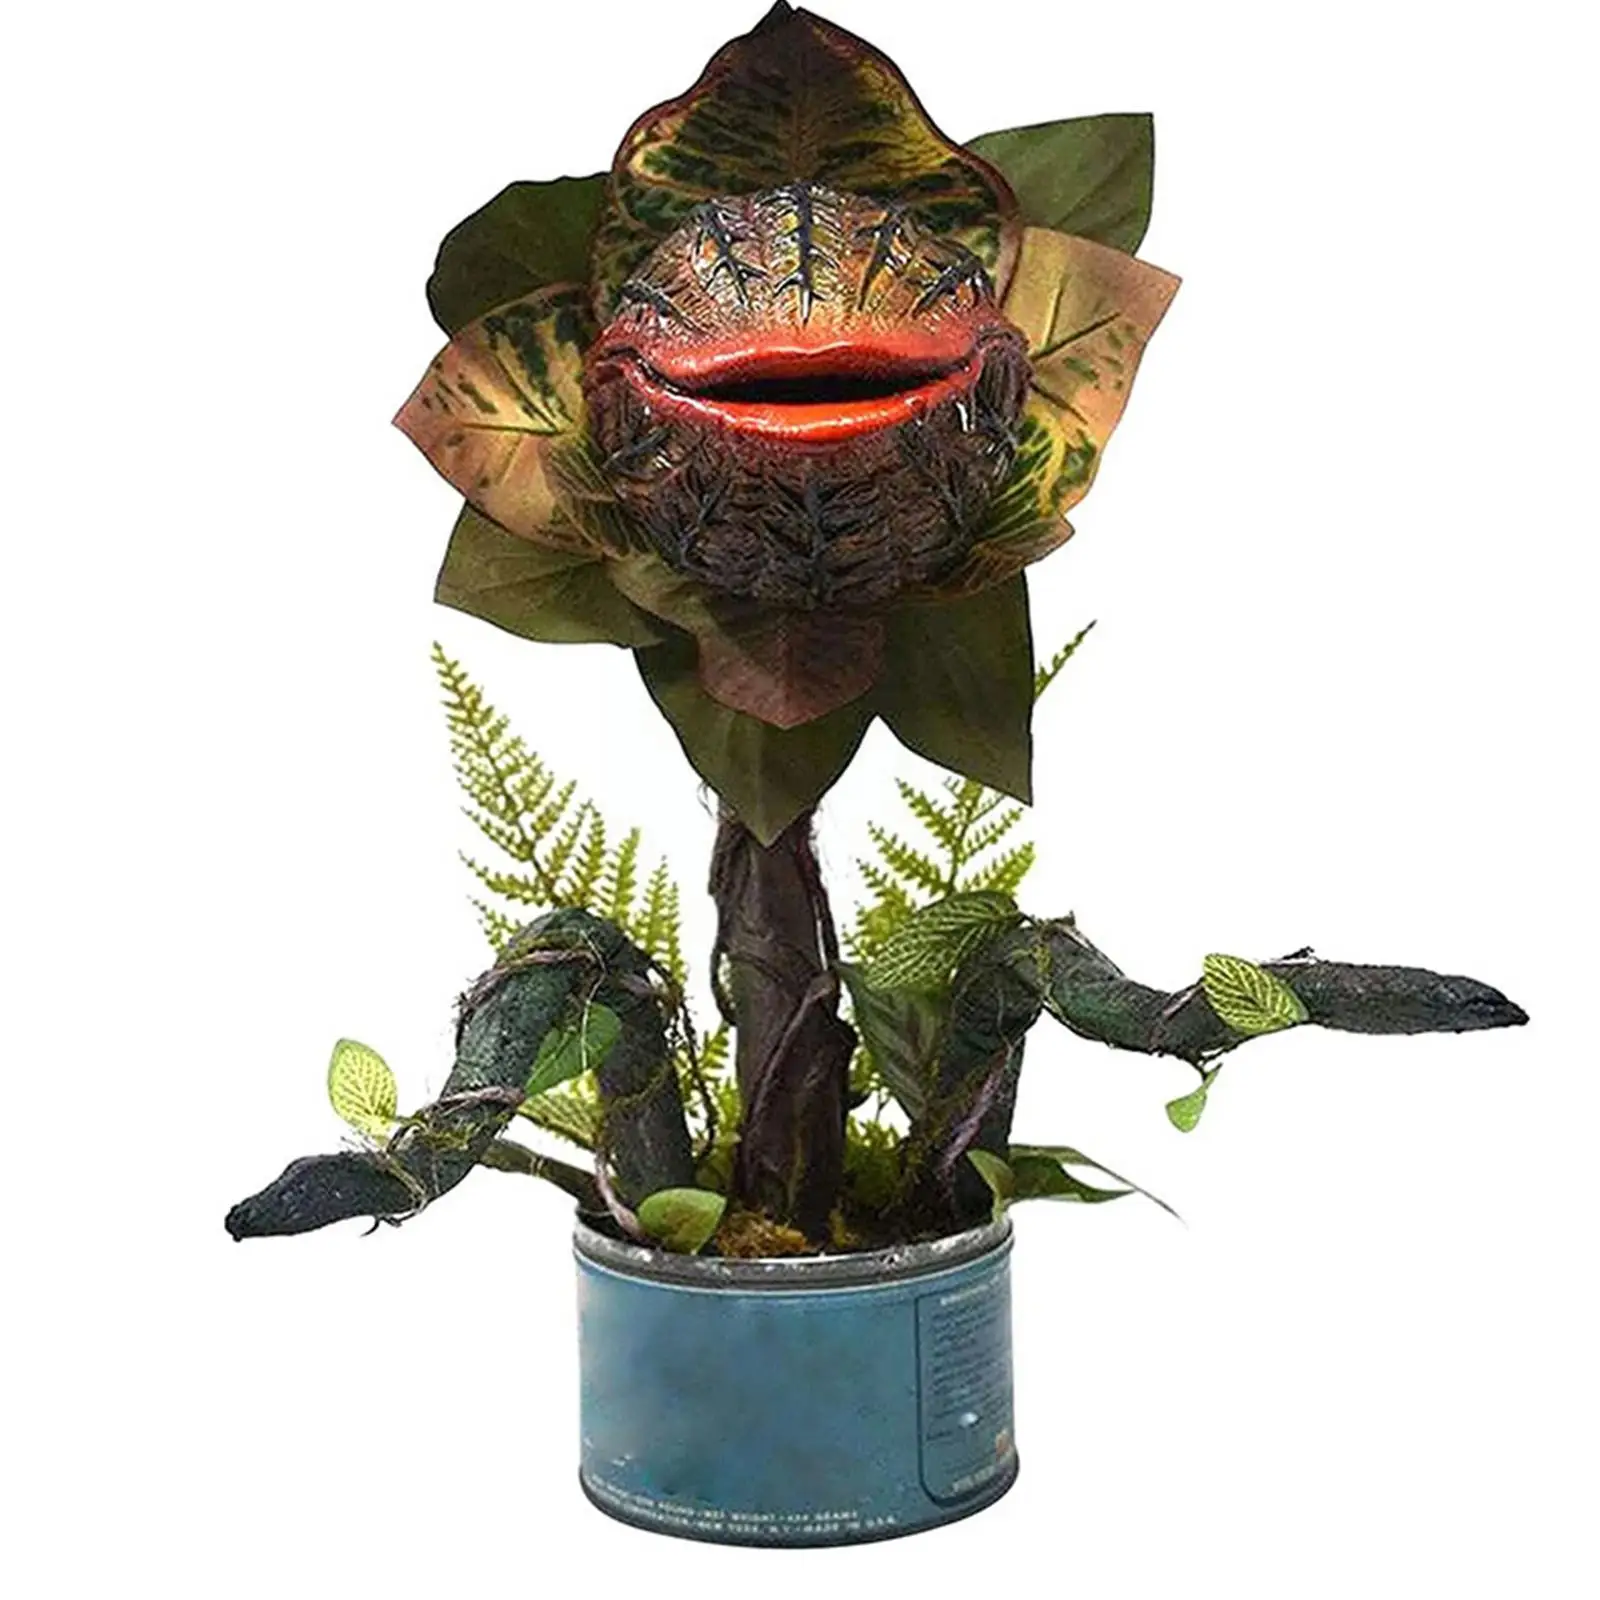 

Полимерные статуи растений Piranha, цветочное украшение из фильма Хэллоуин, декор для сада, искусство для дома P7s2